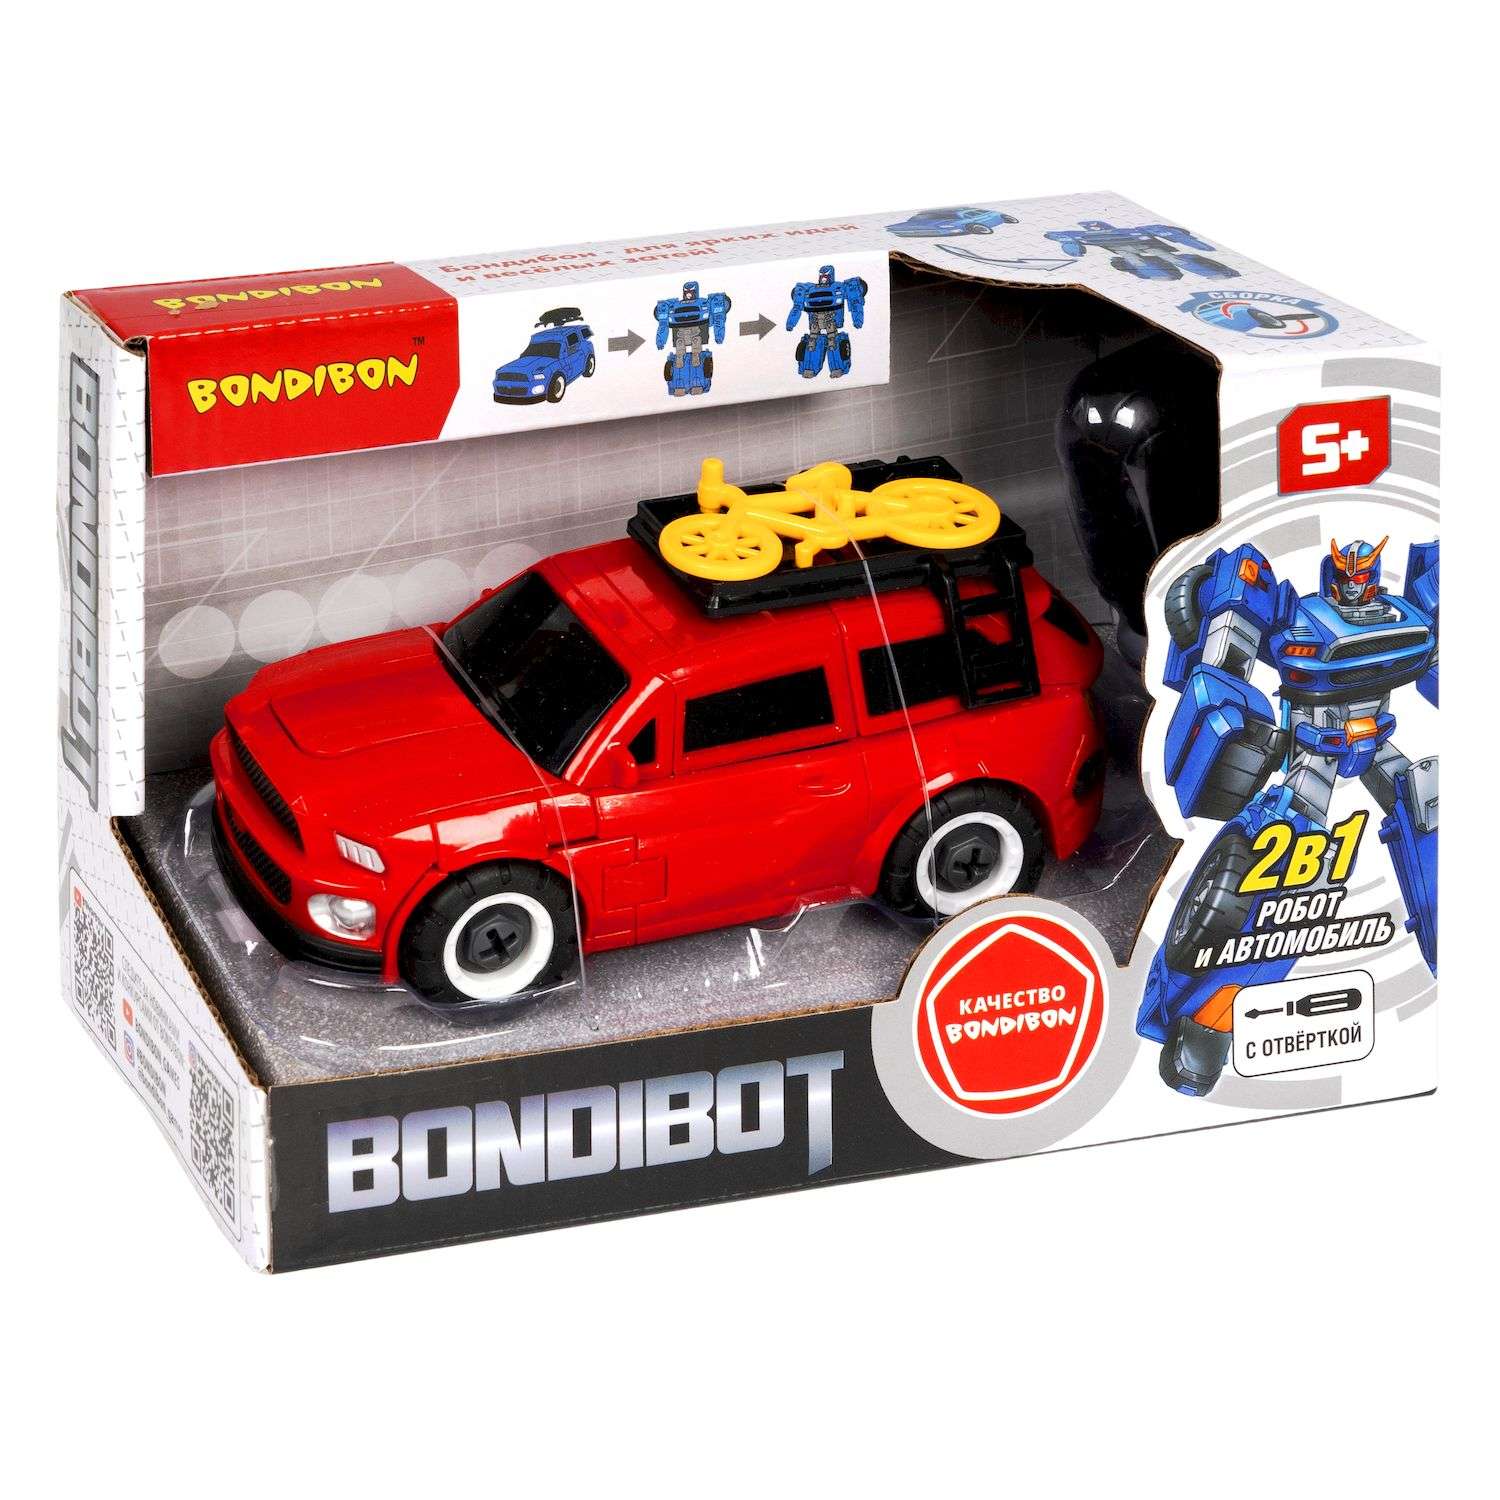 Трансформер BONDIBON Bondibot робот-автомобиль с отвёрткой 2 в 1 джип с велосипедом красного цвета - фото 3